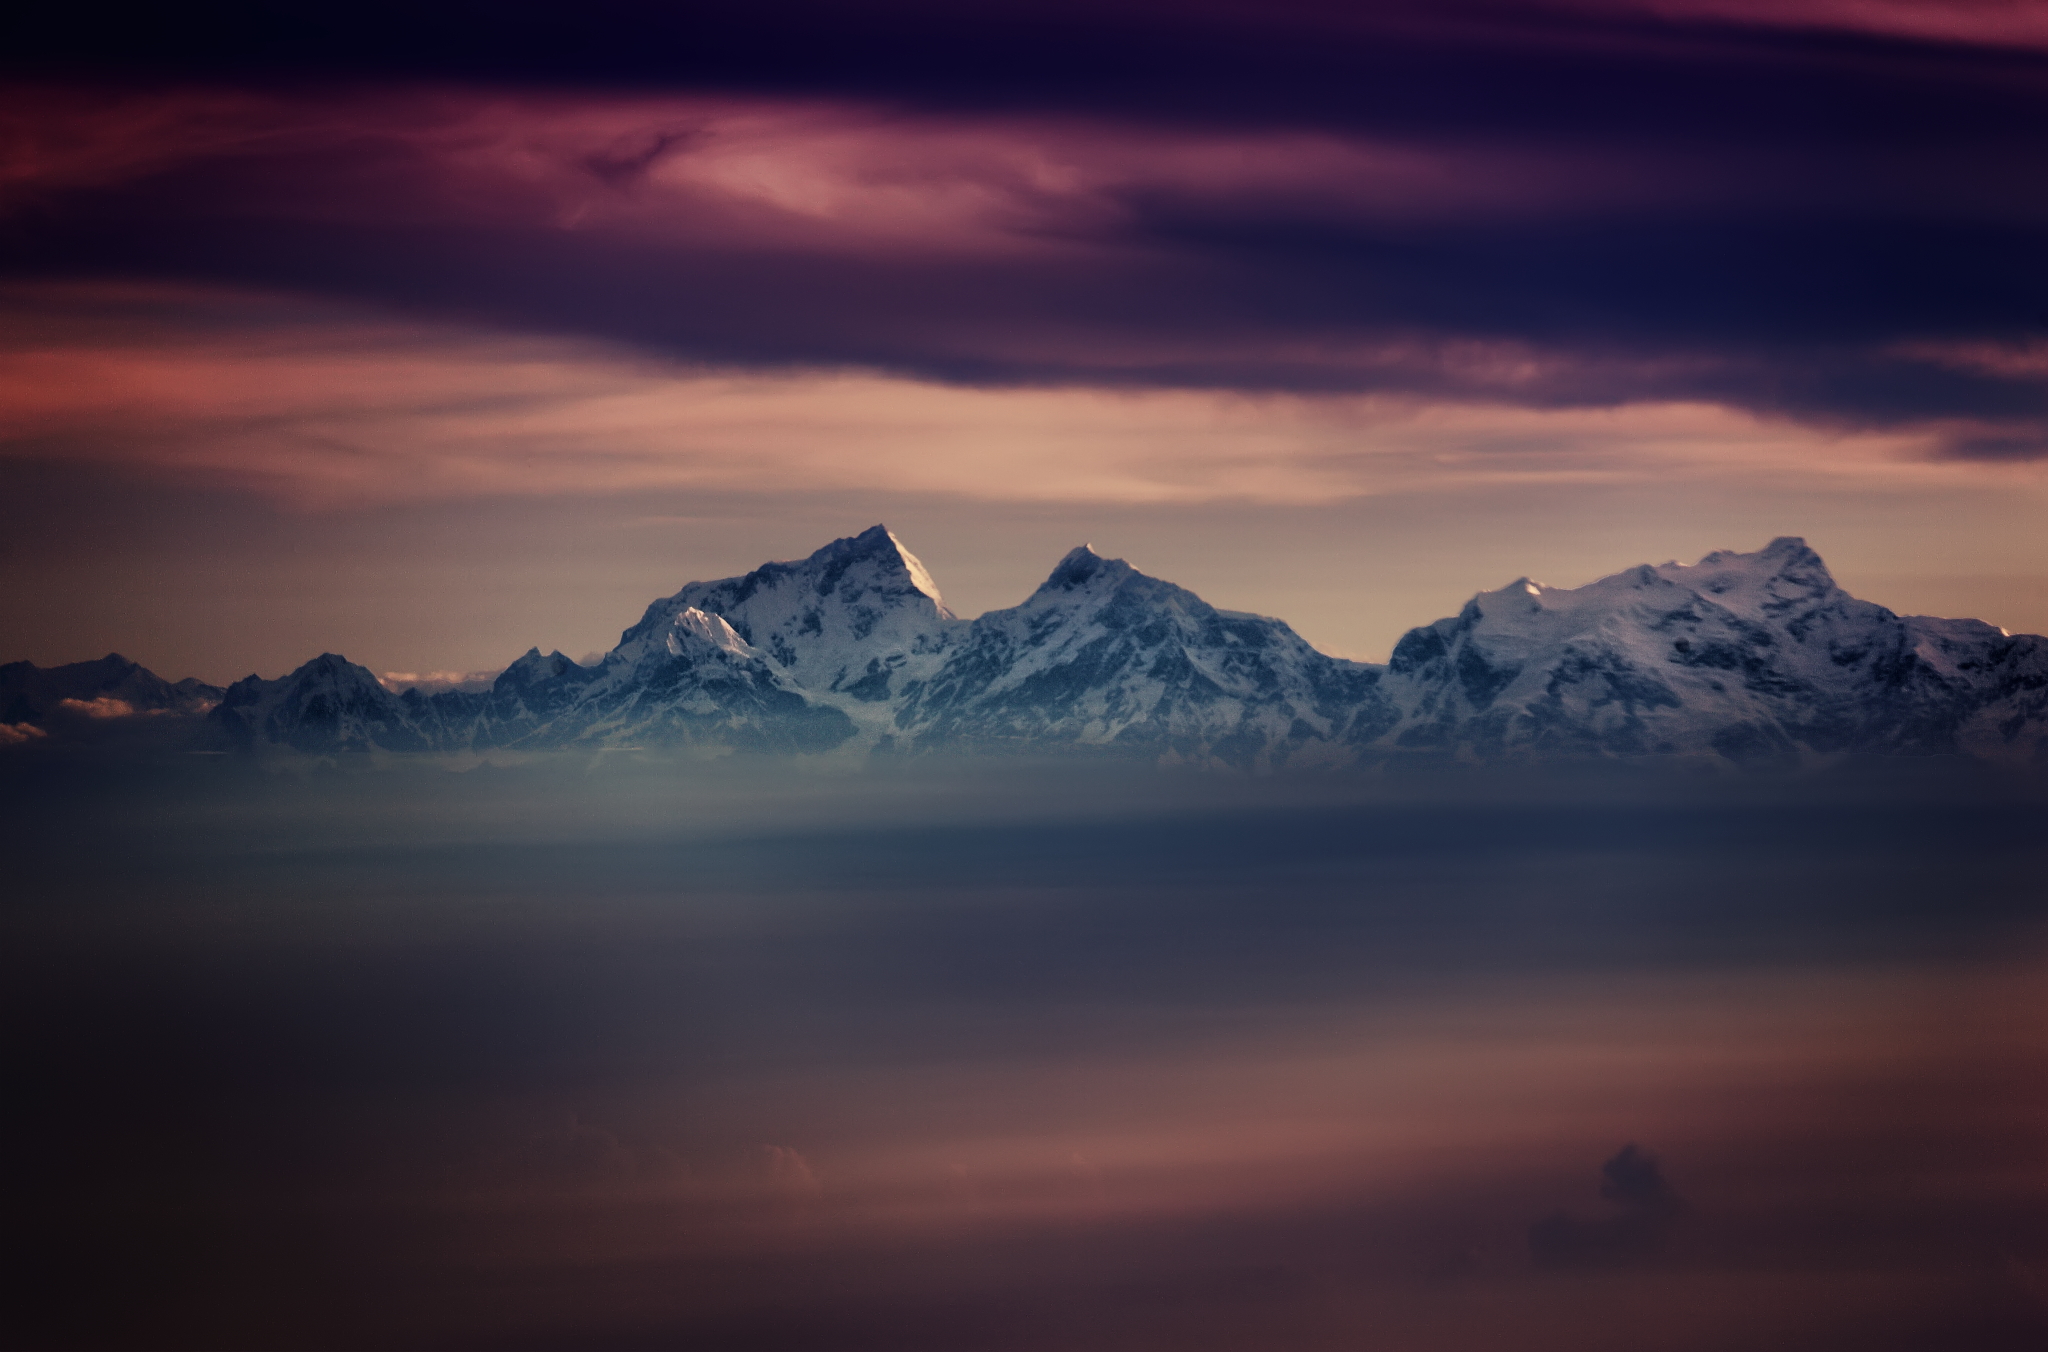 Himalayas at sunset...